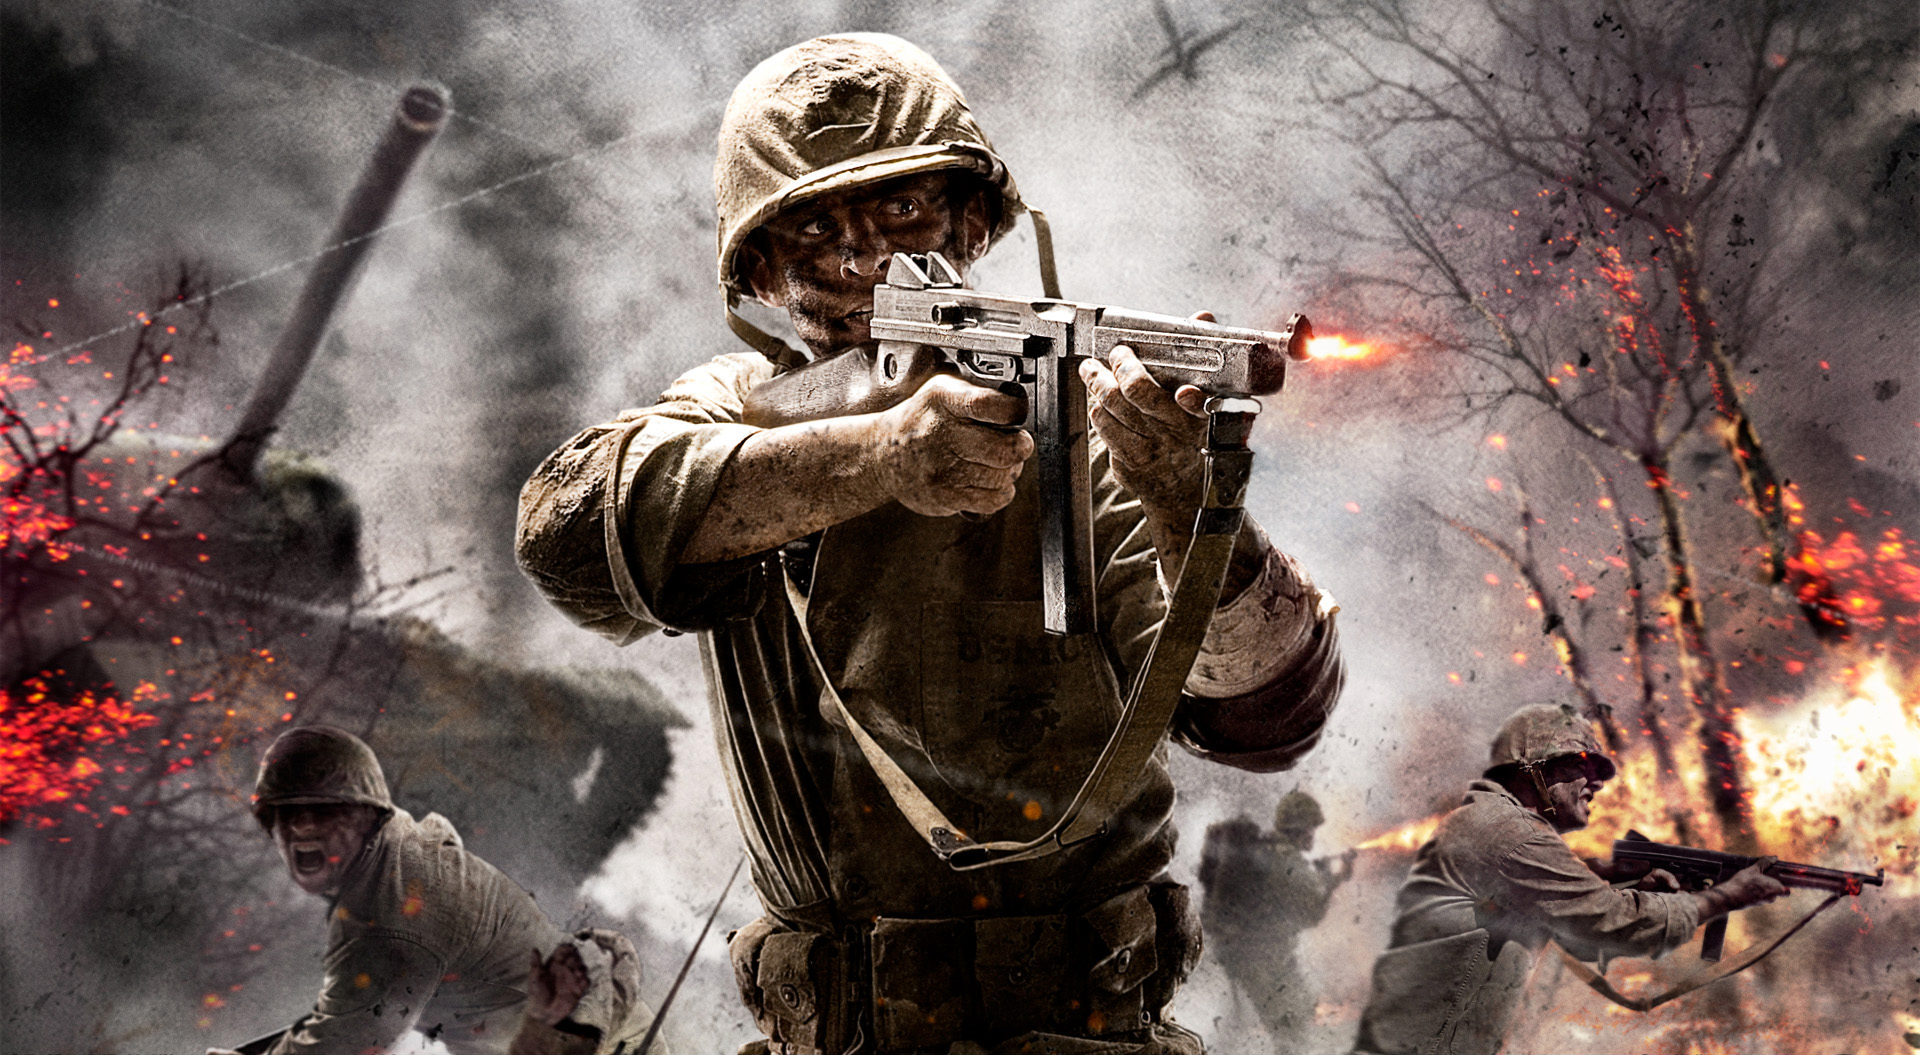 Melhores papéis de parede de Call Of Duty: World At War para tela do telefone